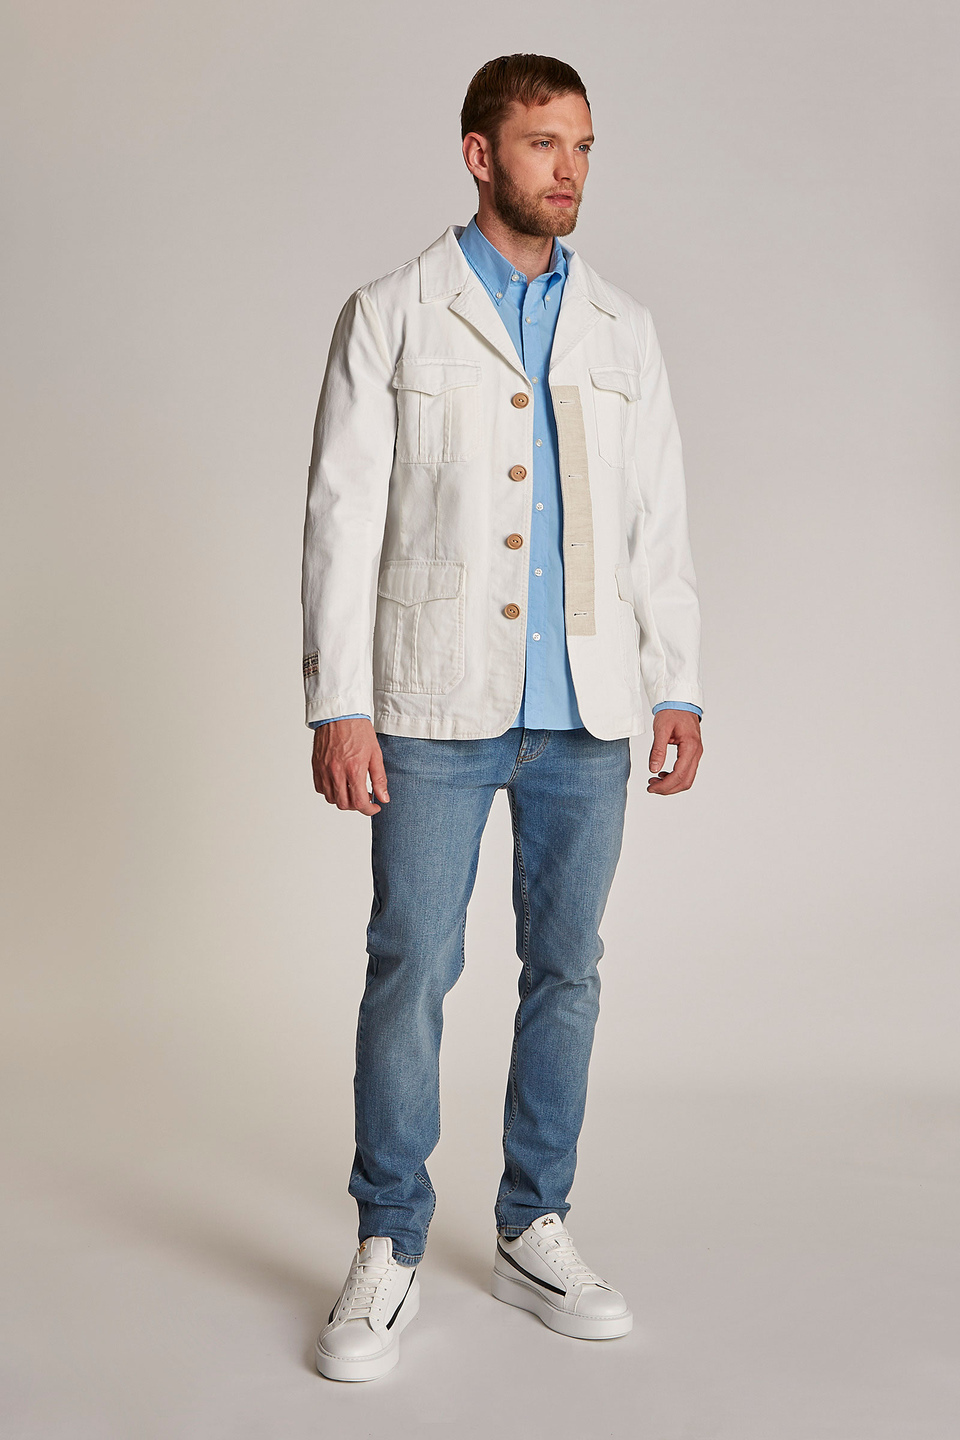 Veste style saharienne homme 100% coton, coupe classique | La Martina - Official Online Shop